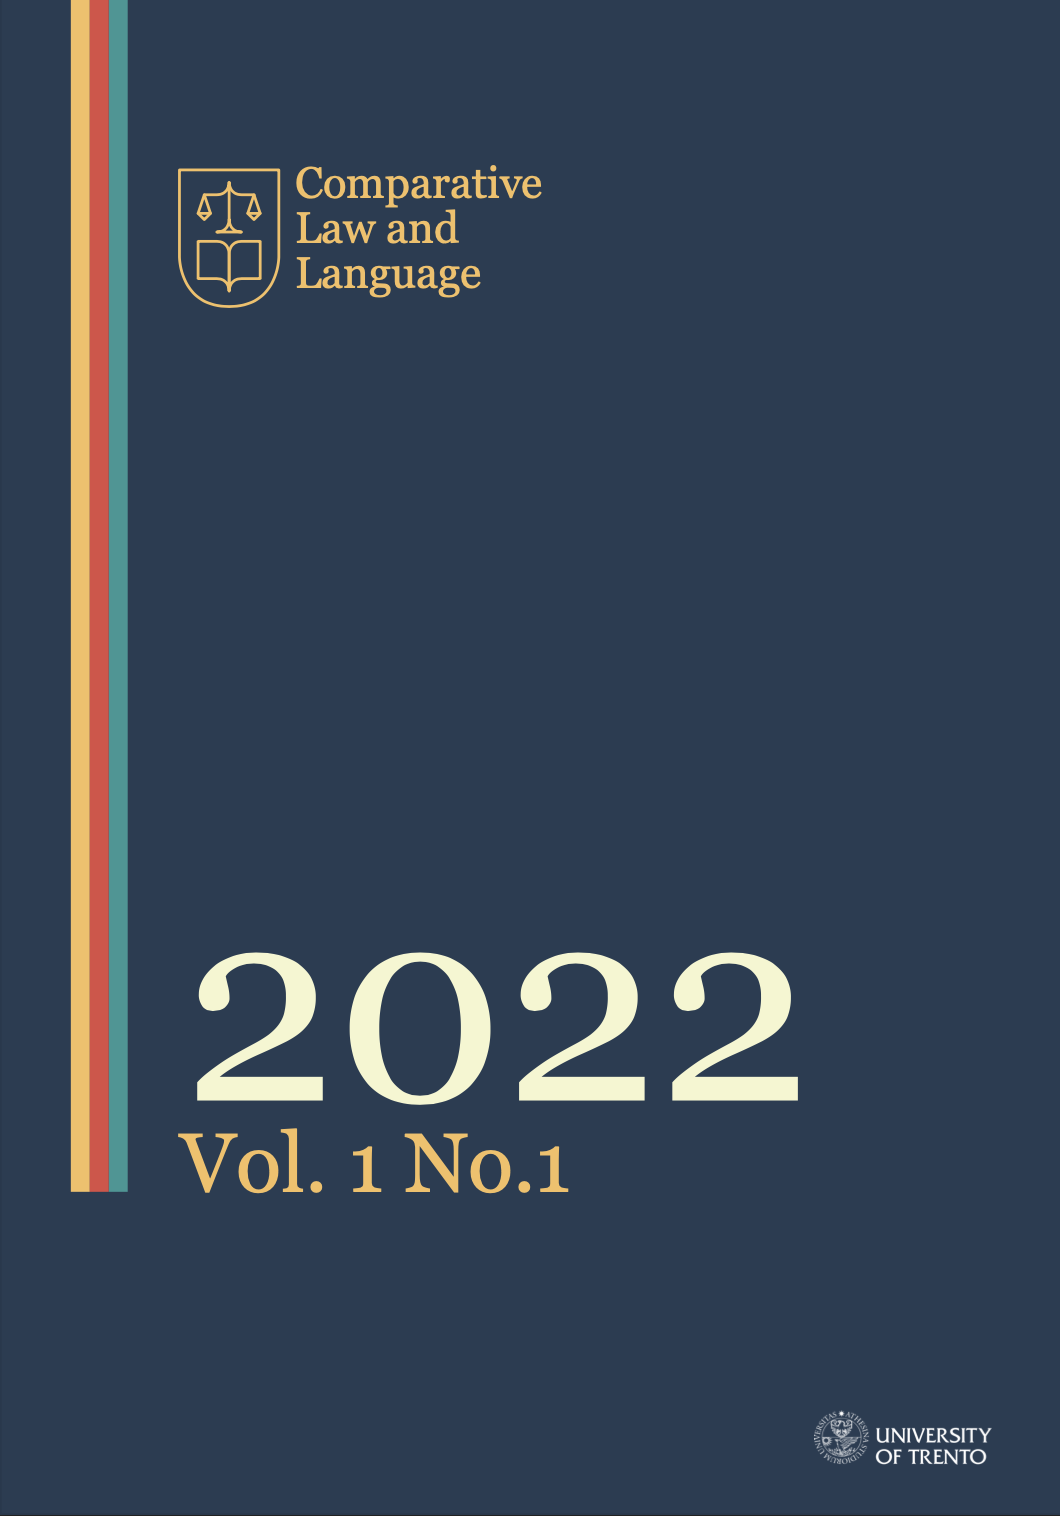 					View Vol. 1 No. 1 (2022): CLL Vol.1 No. 1 2022
				